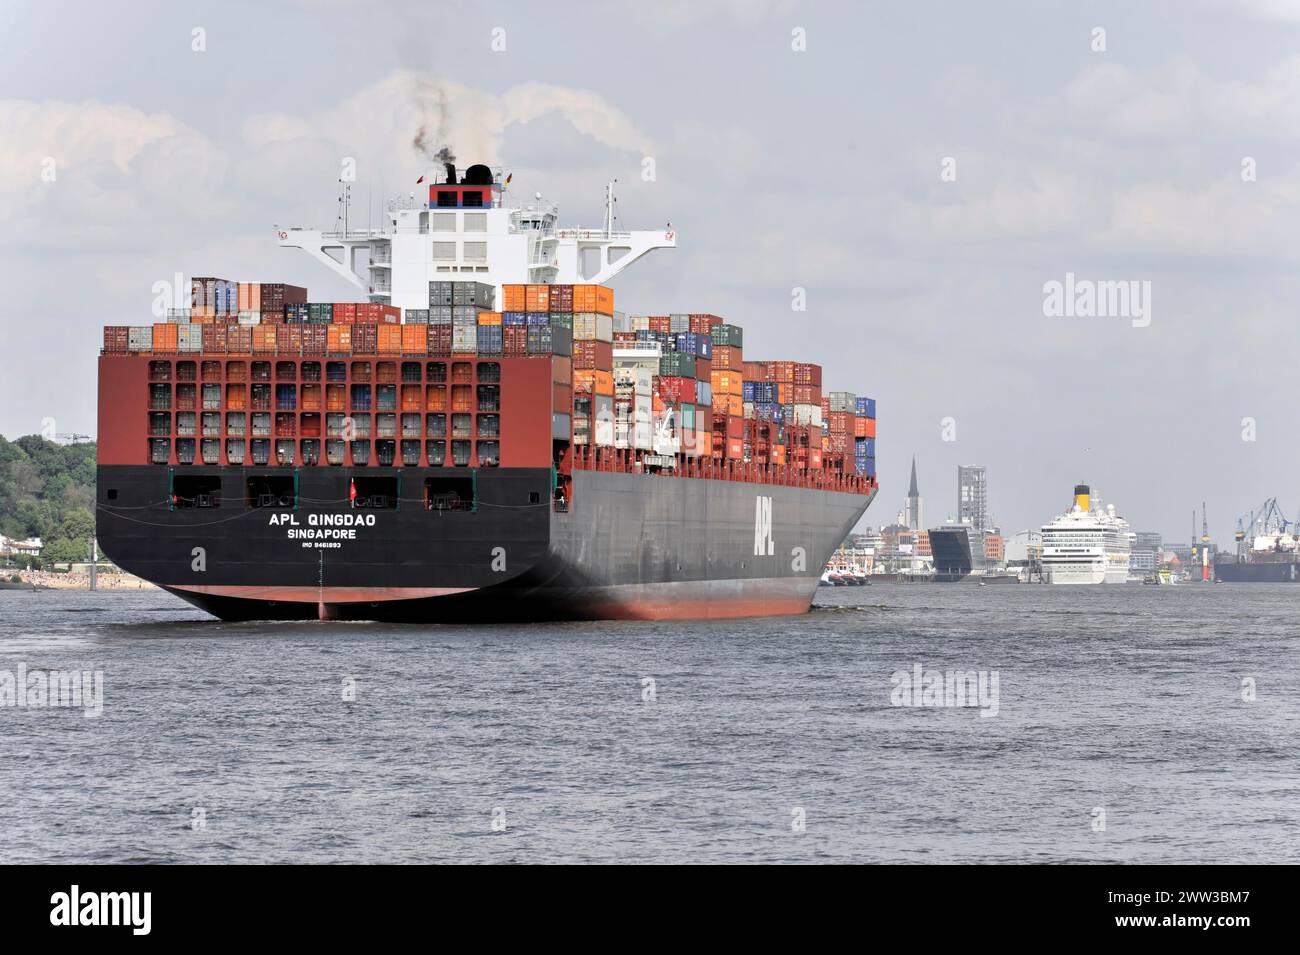 APL QINGDAO, nave portacontainer sul fiume Elba con carico pieno sotto il cielo nuvoloso passa da Amburgo, città anseatica, Germania Foto Stock